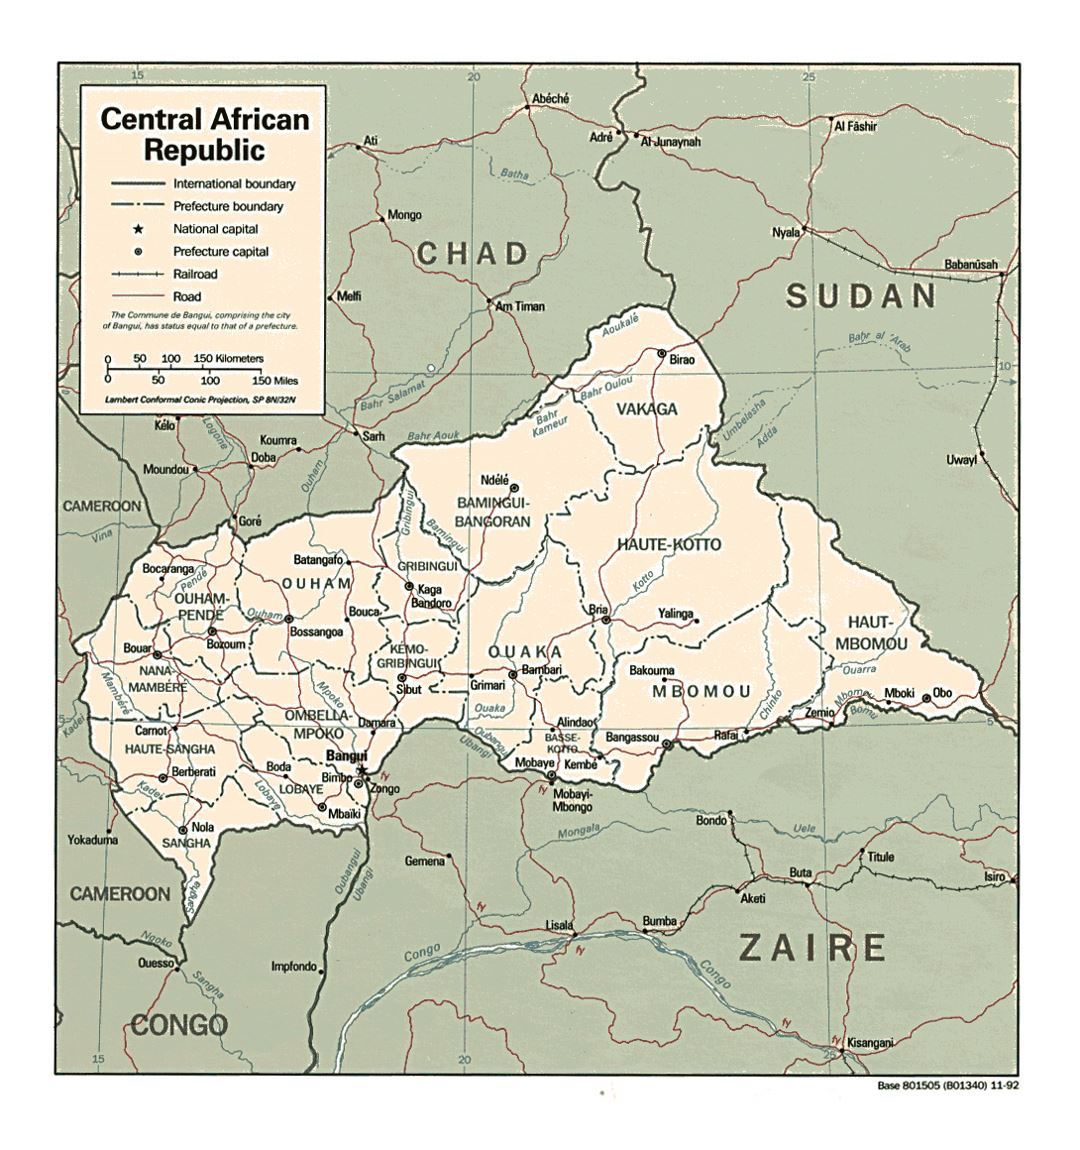 Детальная политико-административная карта Центральноафриканской Республики с дорогами, железными дорогами и крупными городами - 1992